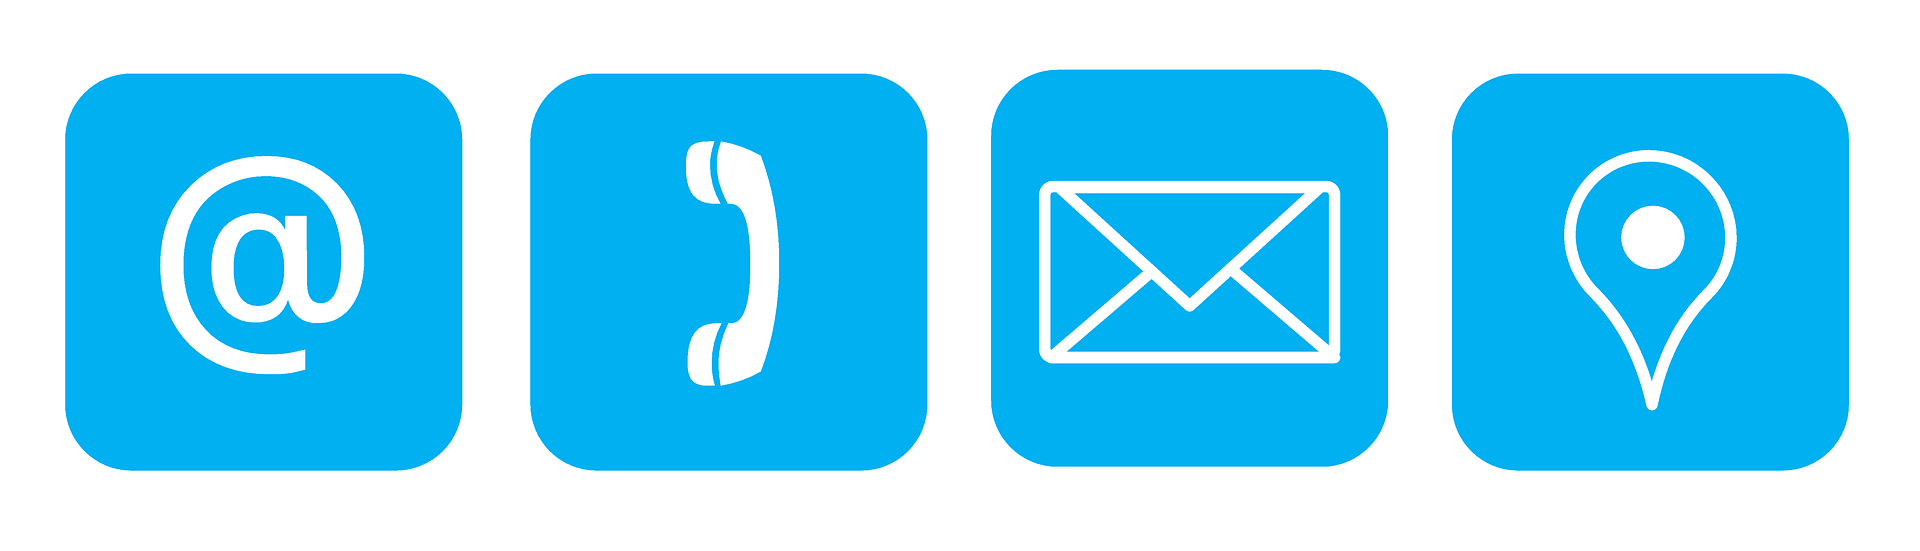 Obrazki symbolizujące moziwośc wysłania maila, wykonania telefonu, wysłania smsa